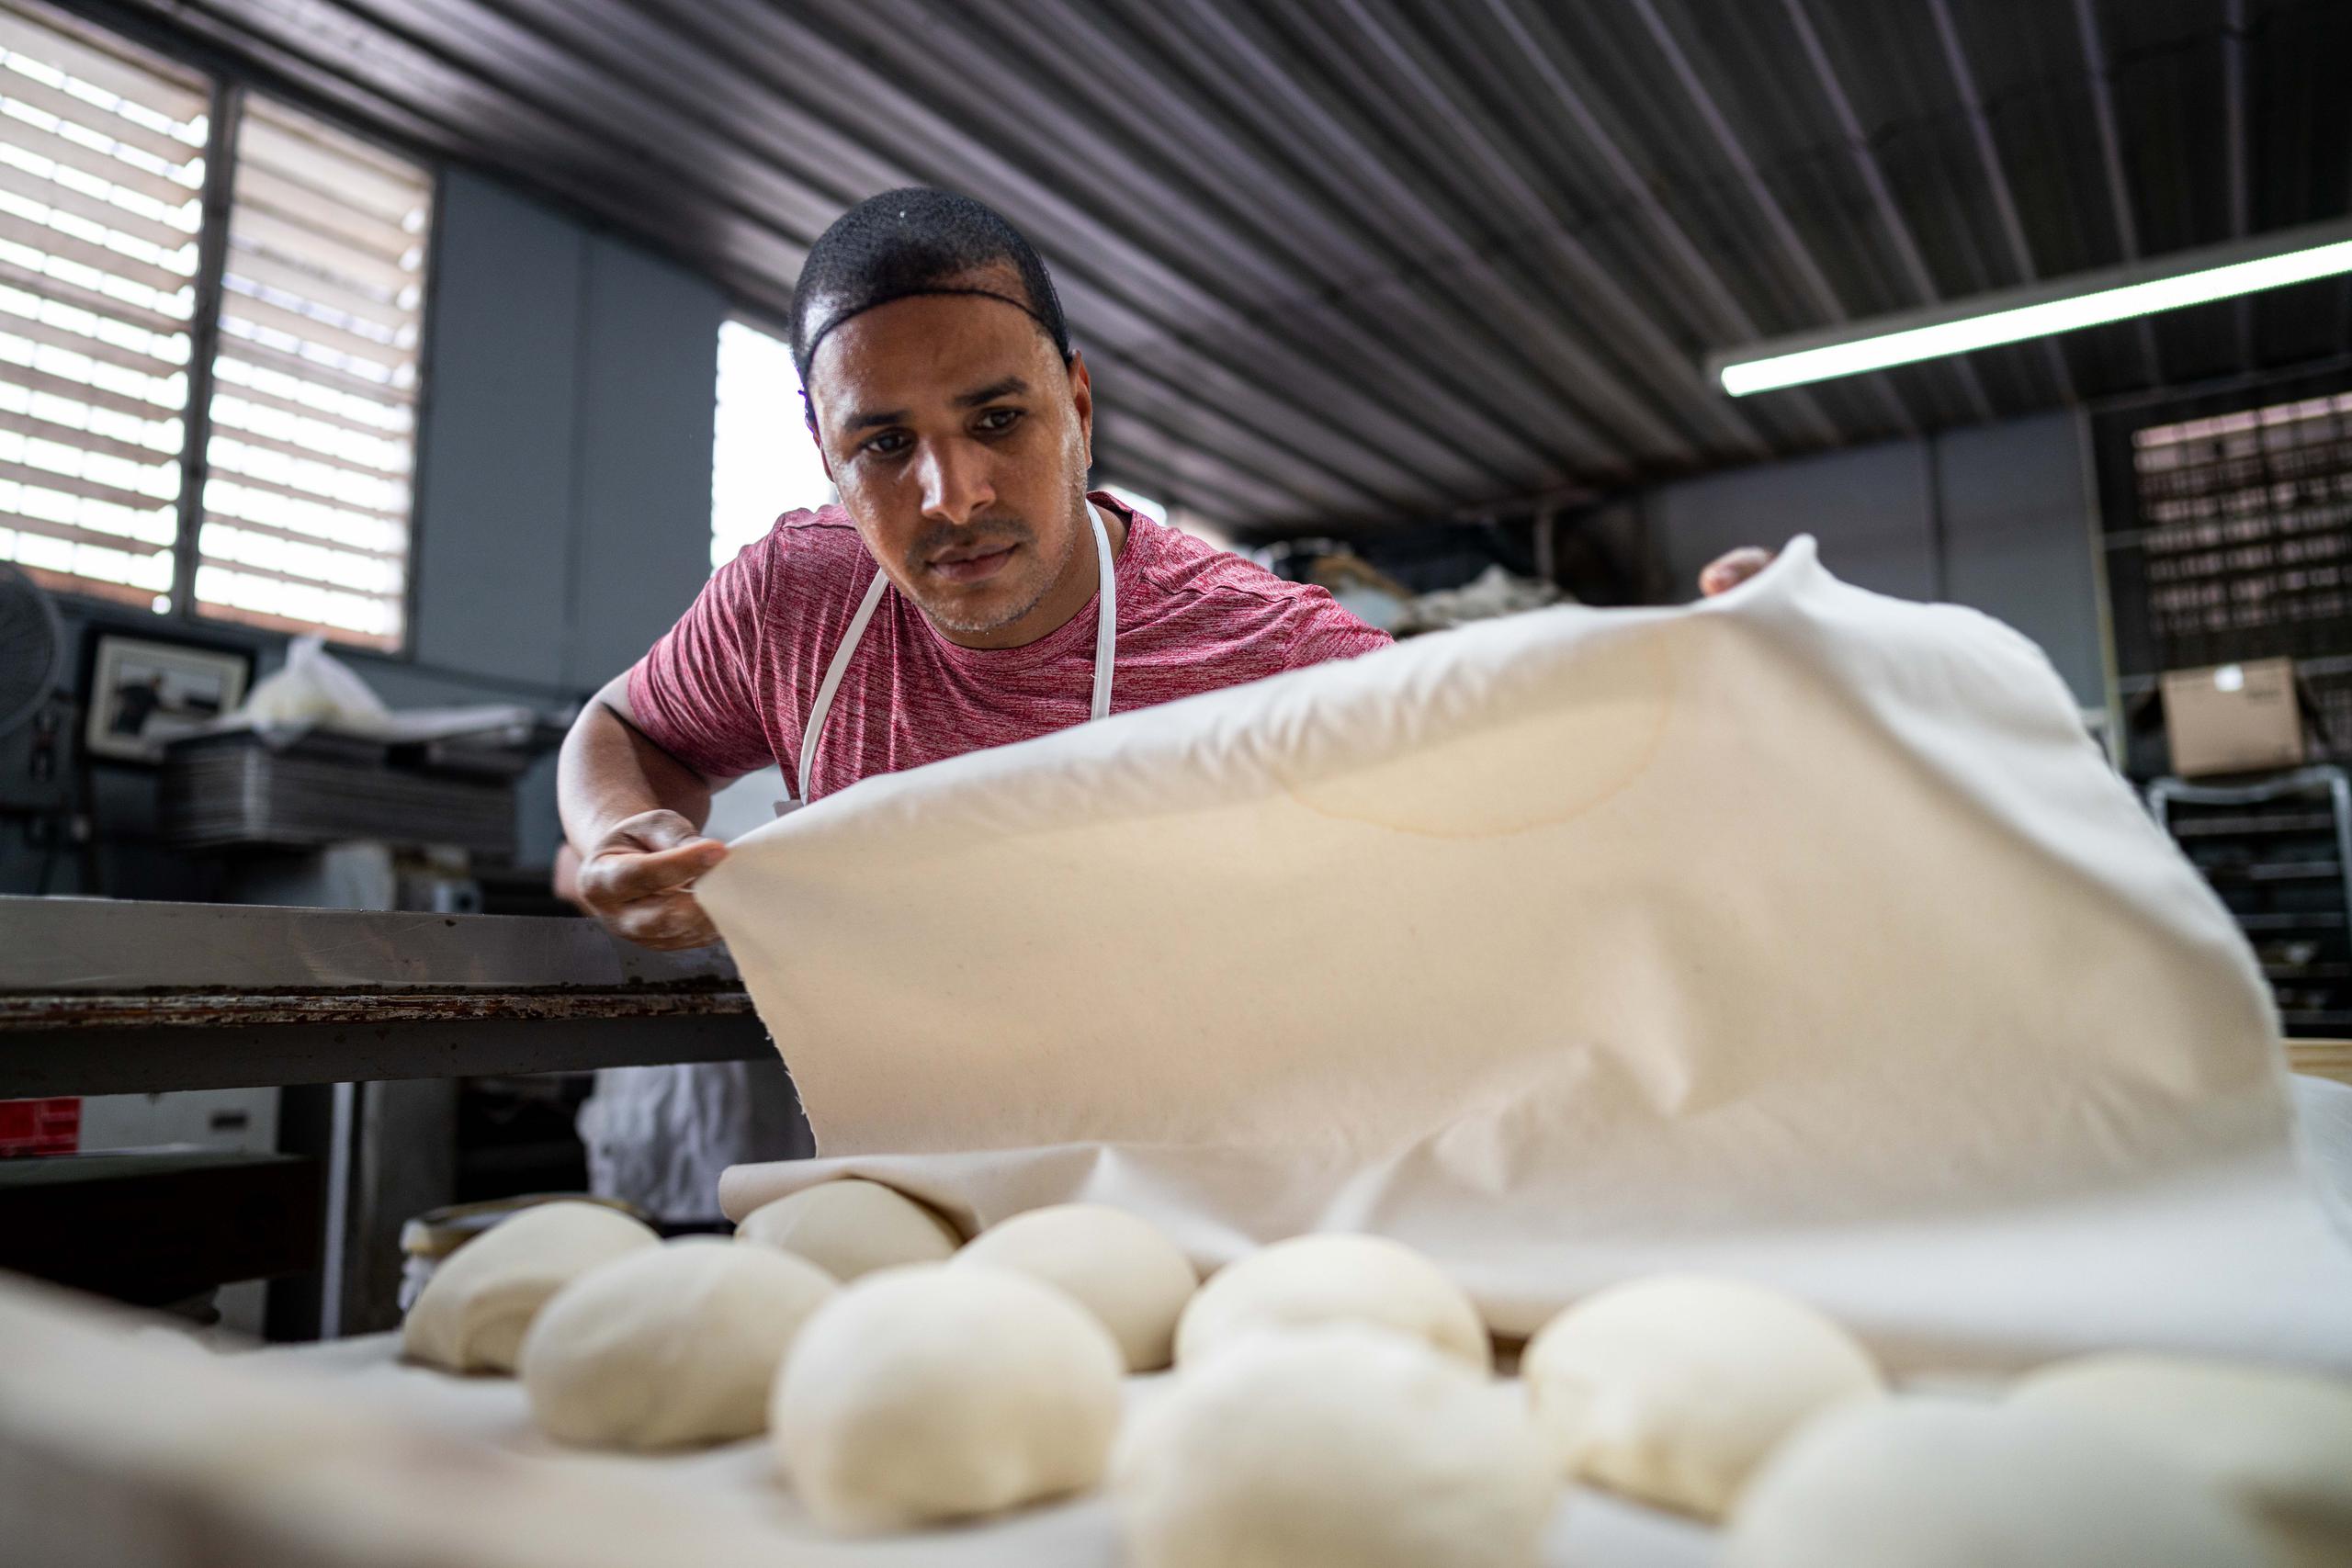 En el establecimiento se prepara el pan “como se hacía antes: usamos los moldes de madera, se usan unas tablas y se pone un canvas de tela”.